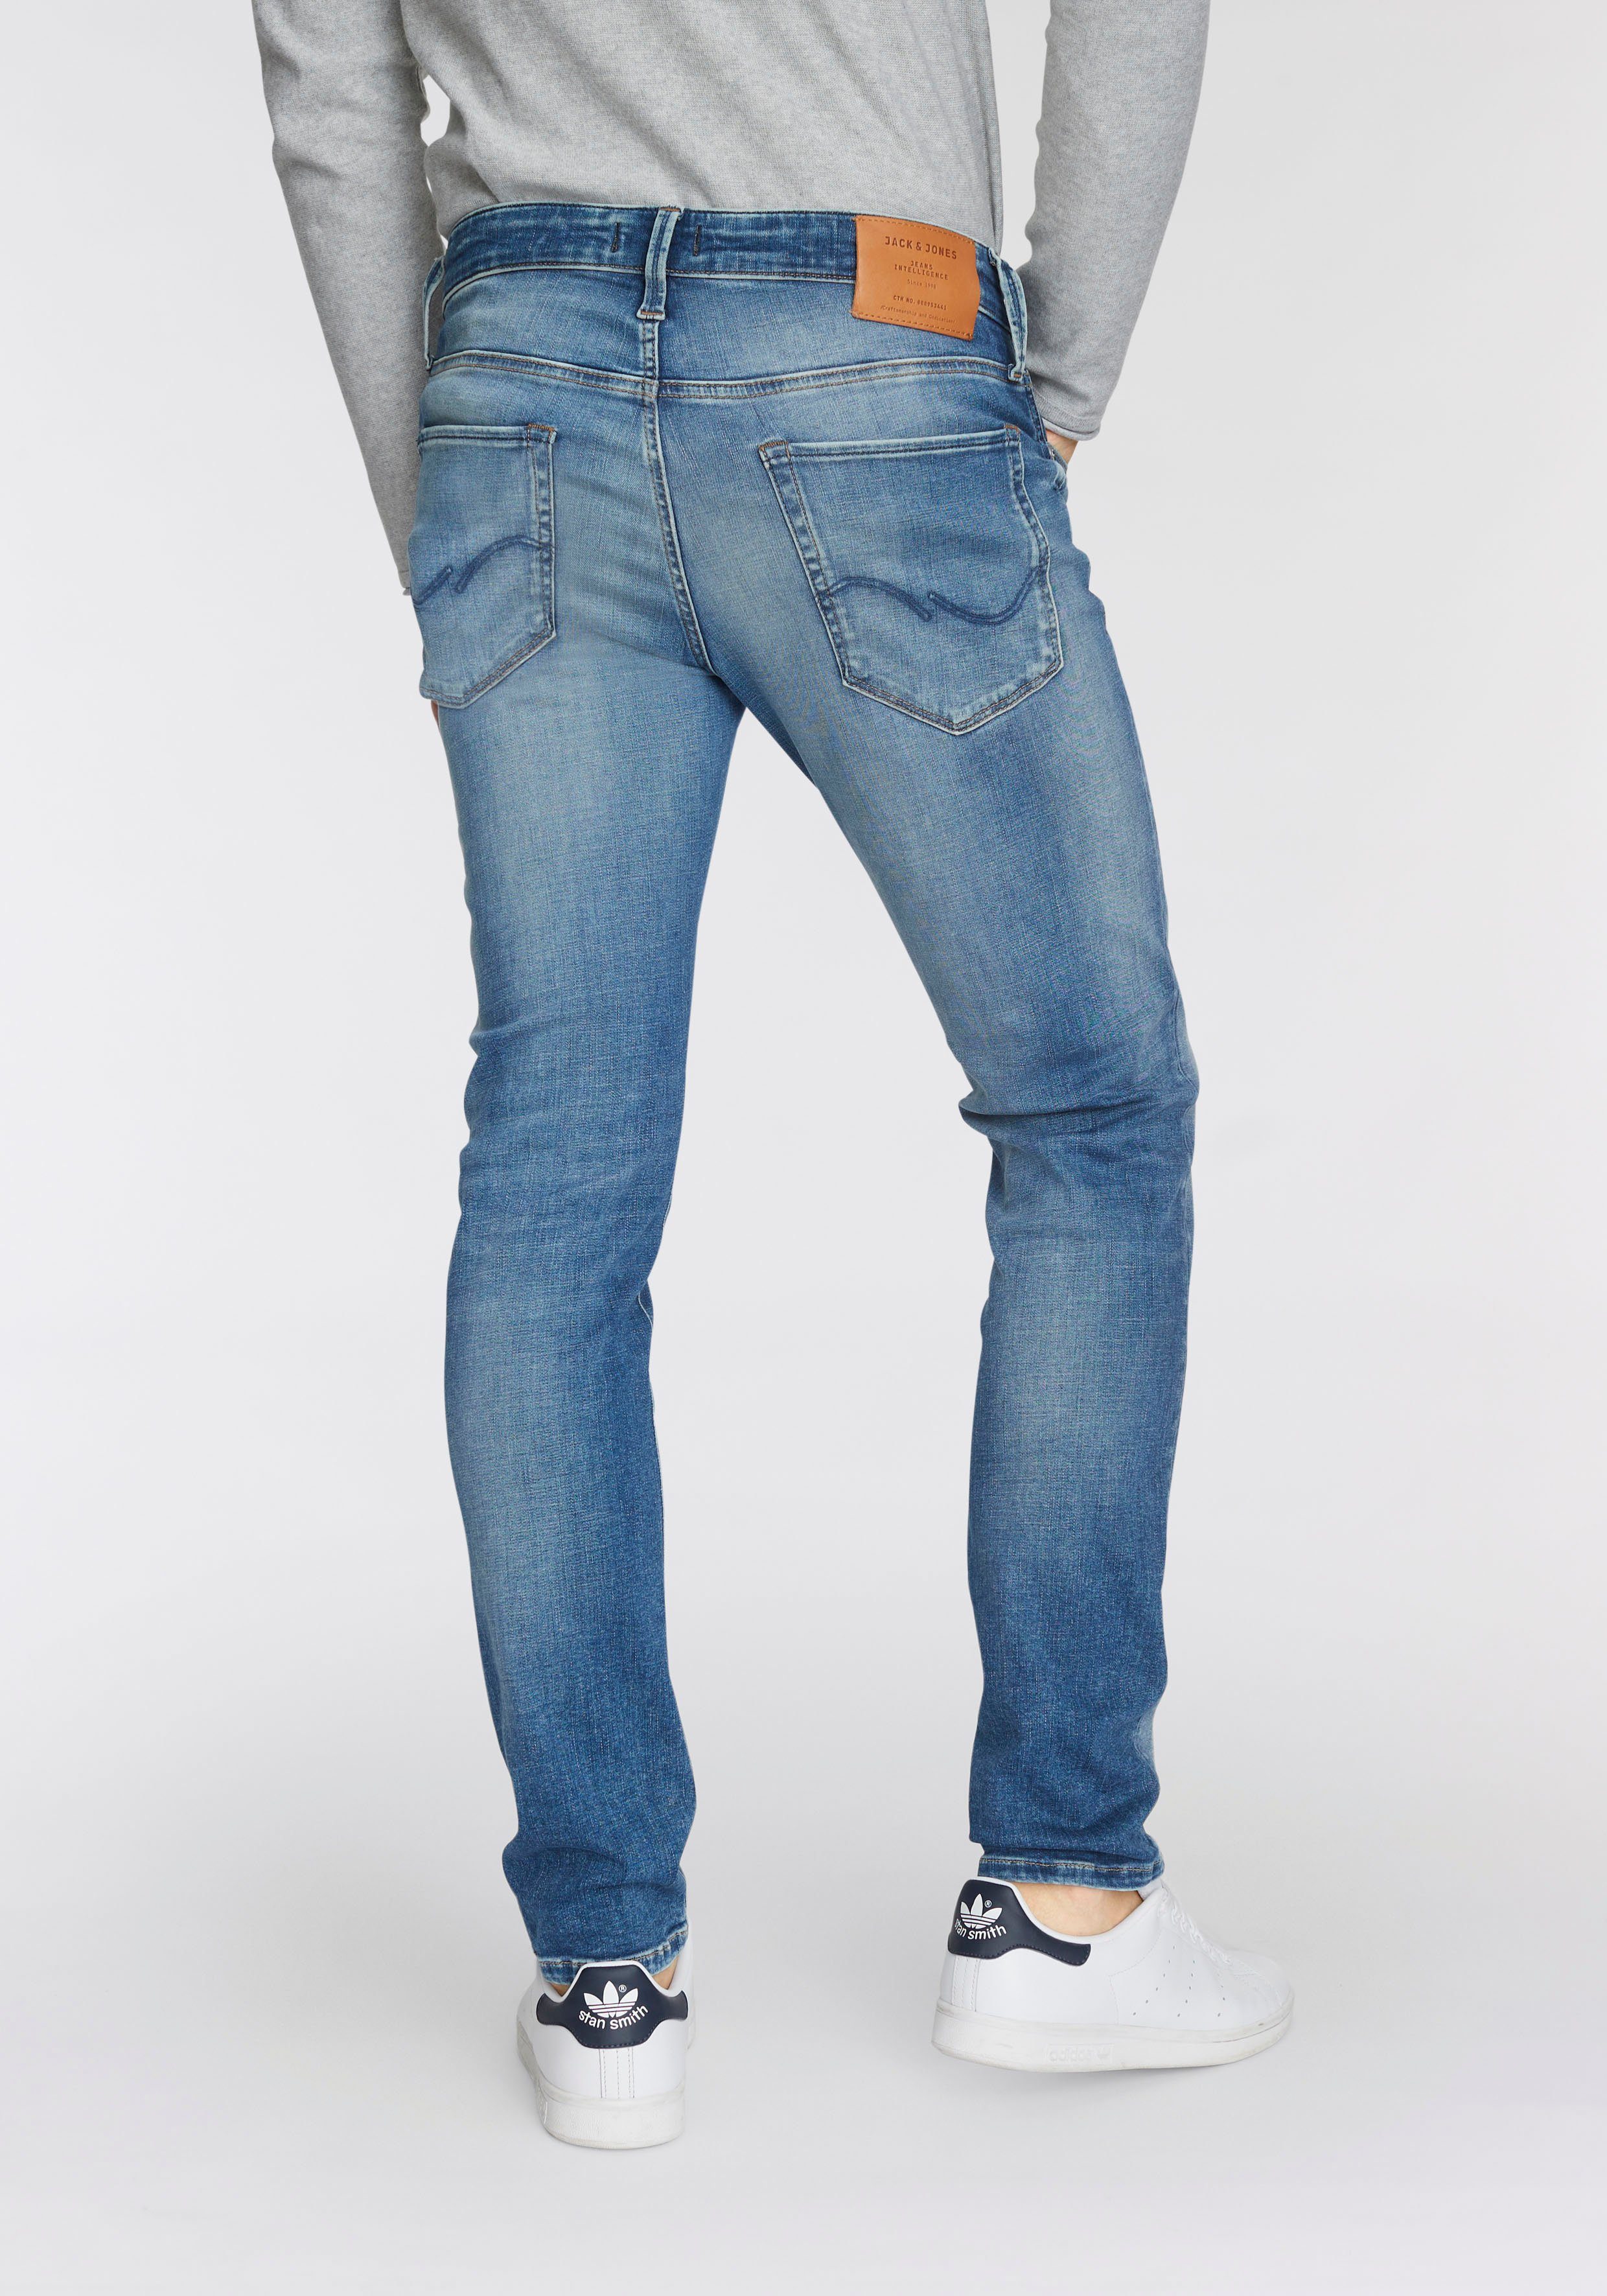 Jones Jack & ICON GLENN Slim-fit-Jeans light-blue-used